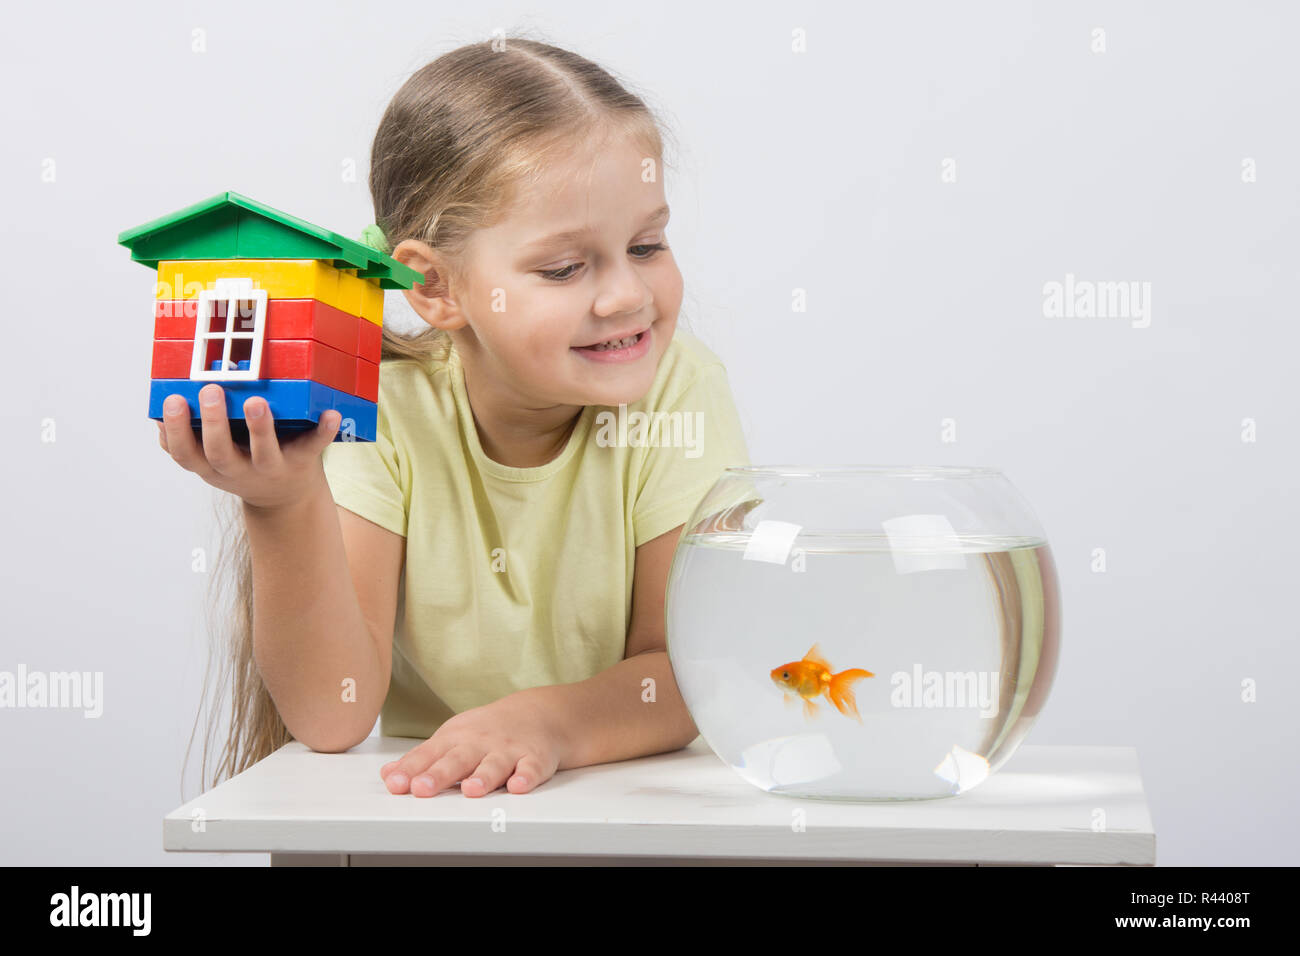 Quattro anni di ragazza si siede con un giocattolo di casa nella parte anteriore di un goldfish Foto Stock